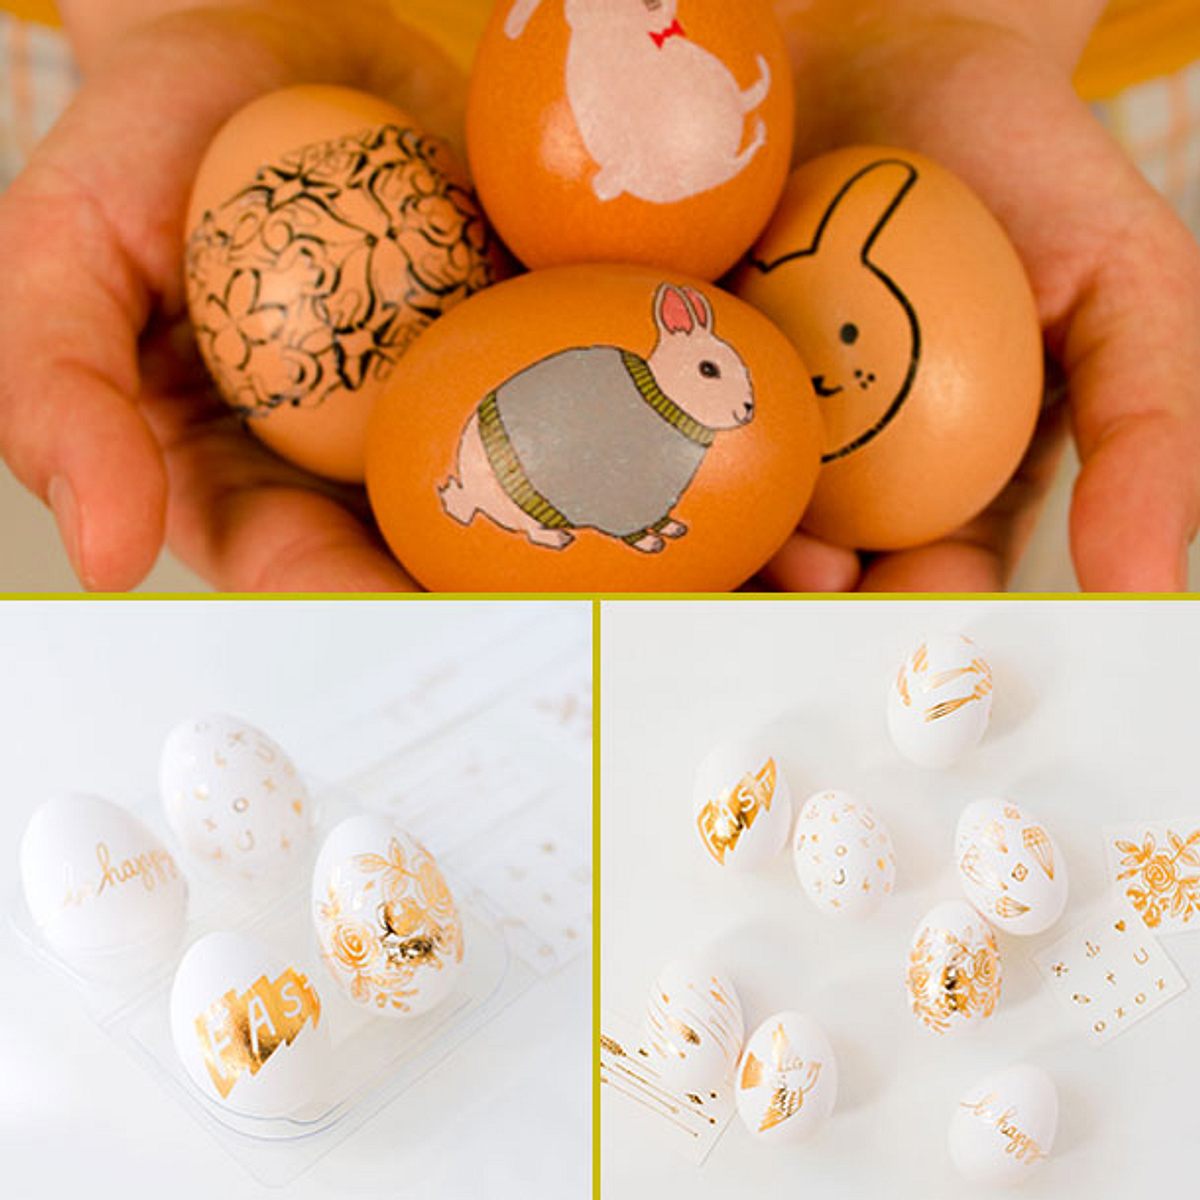 Ostern: Die coolsten Hacks zum Eierfärben